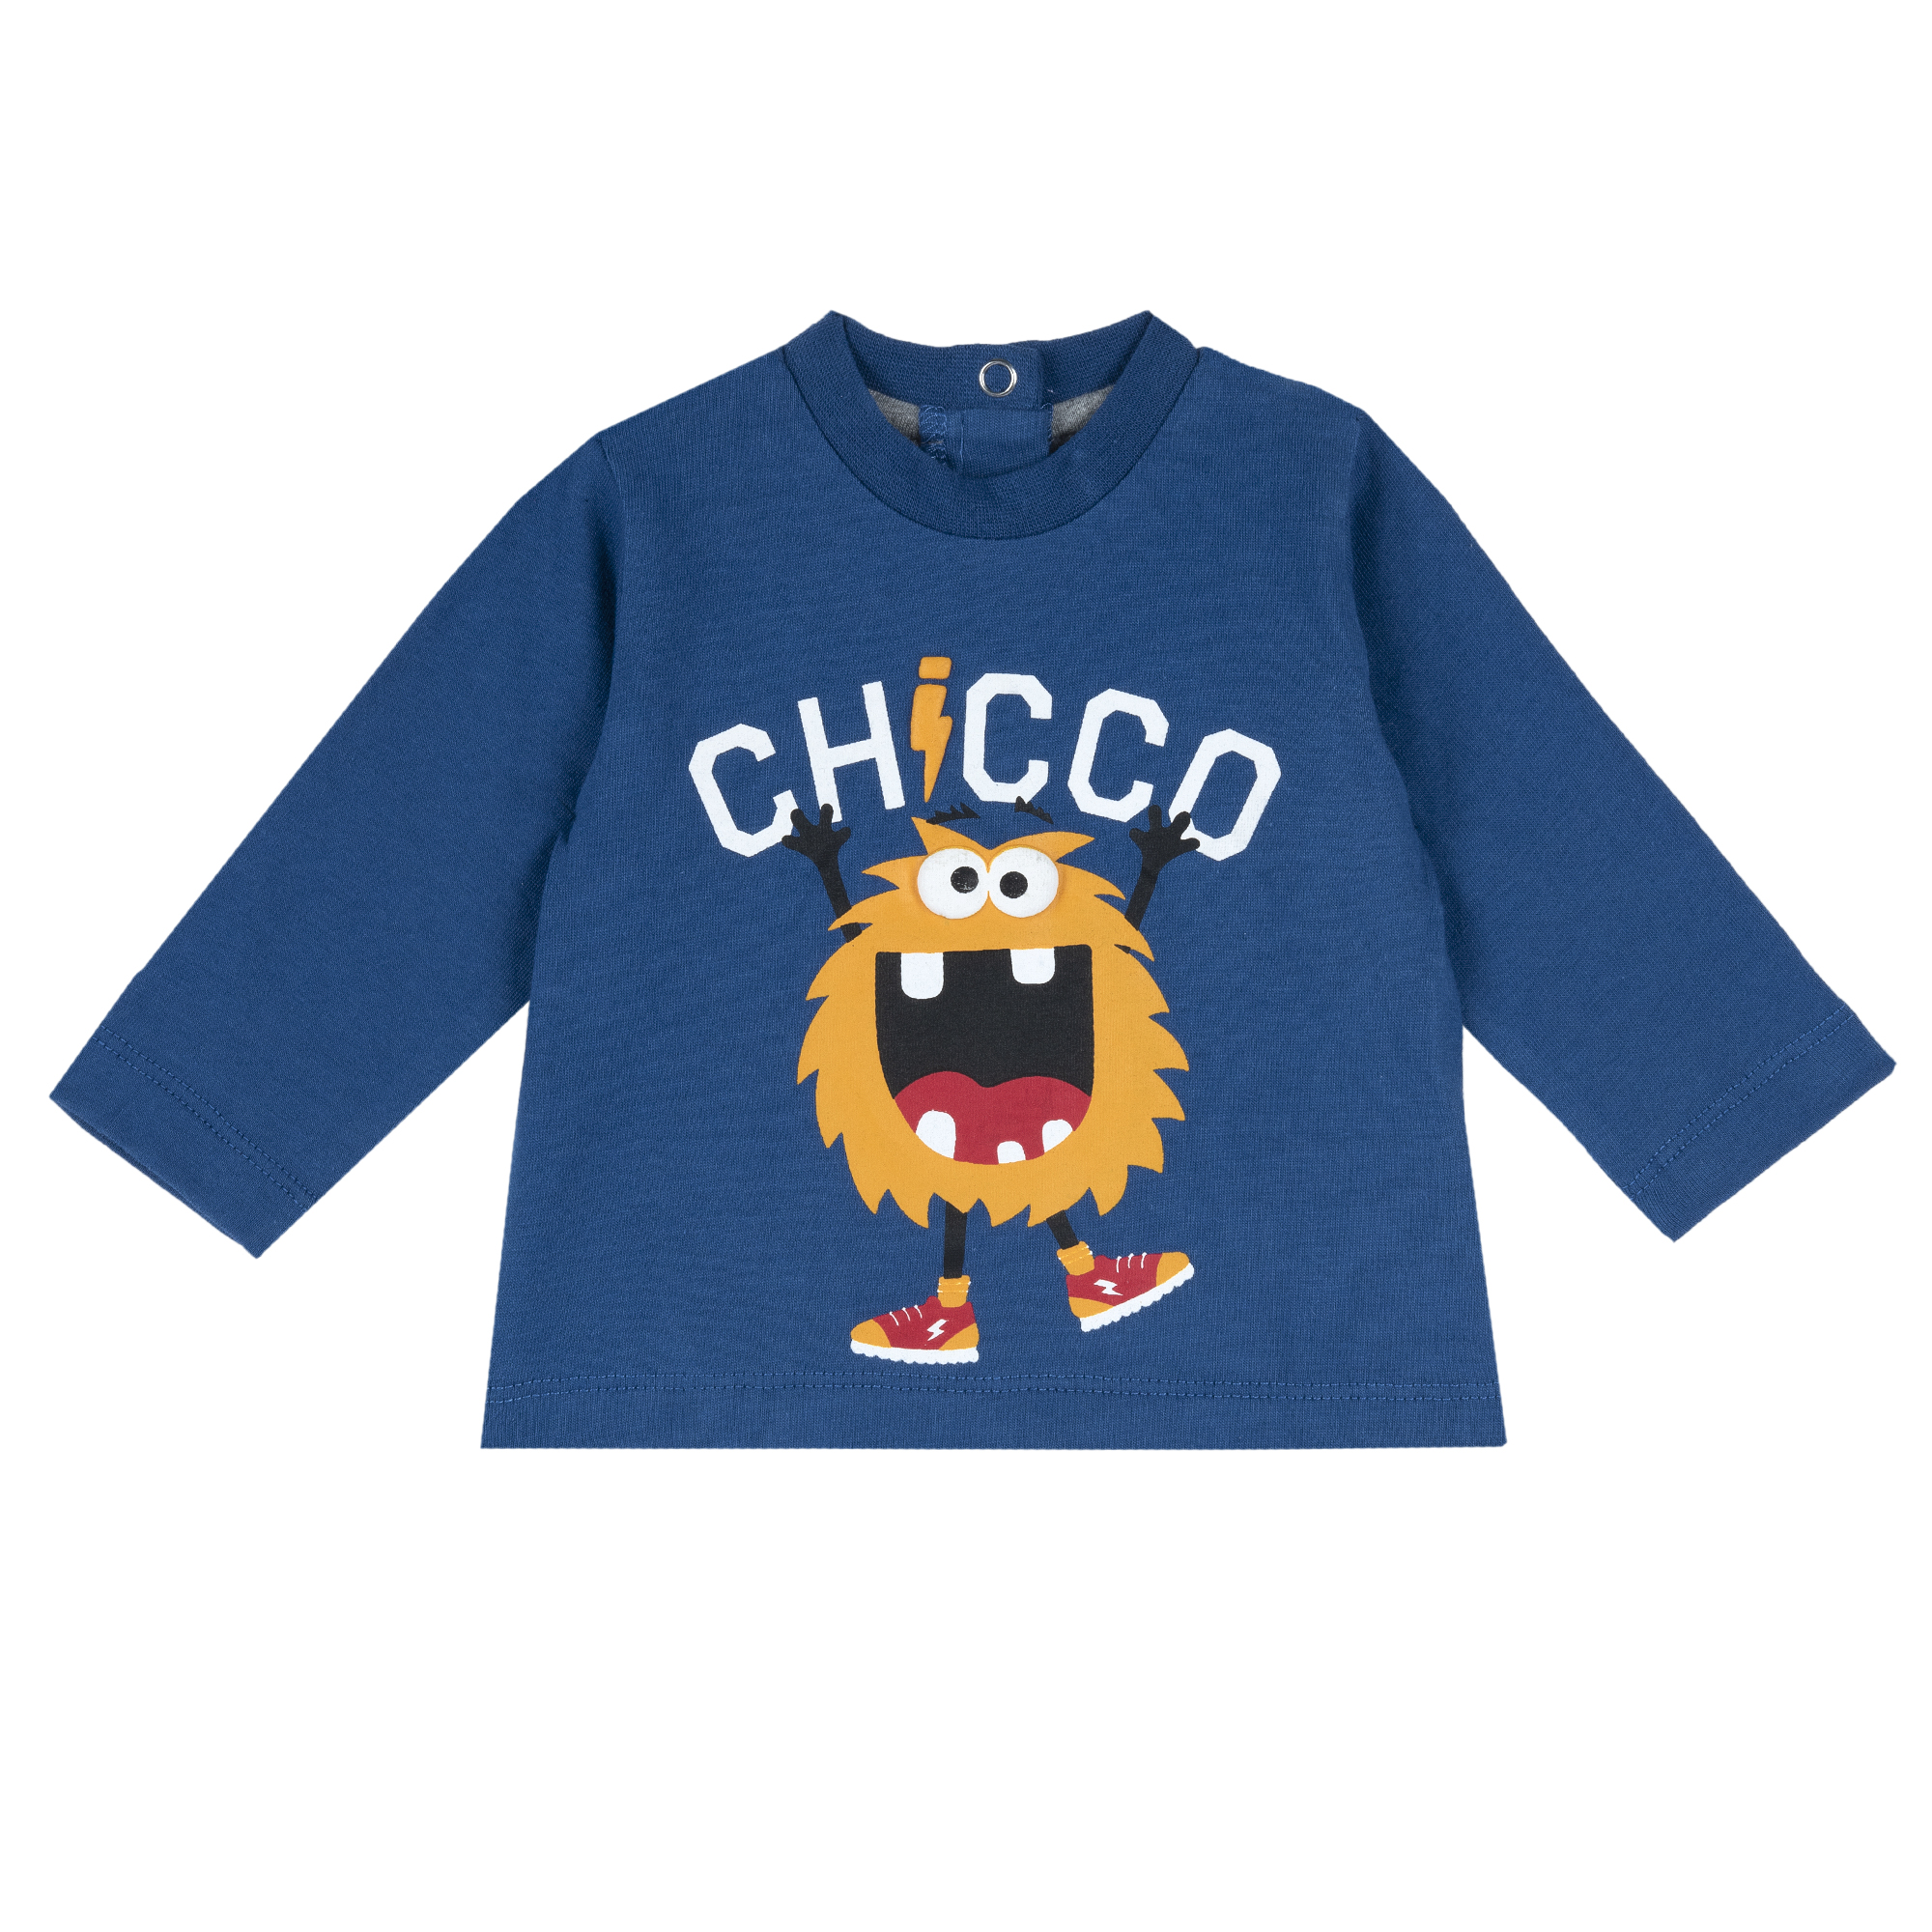 Bluza copii Chicco, 67387-61MFCO, Albastru